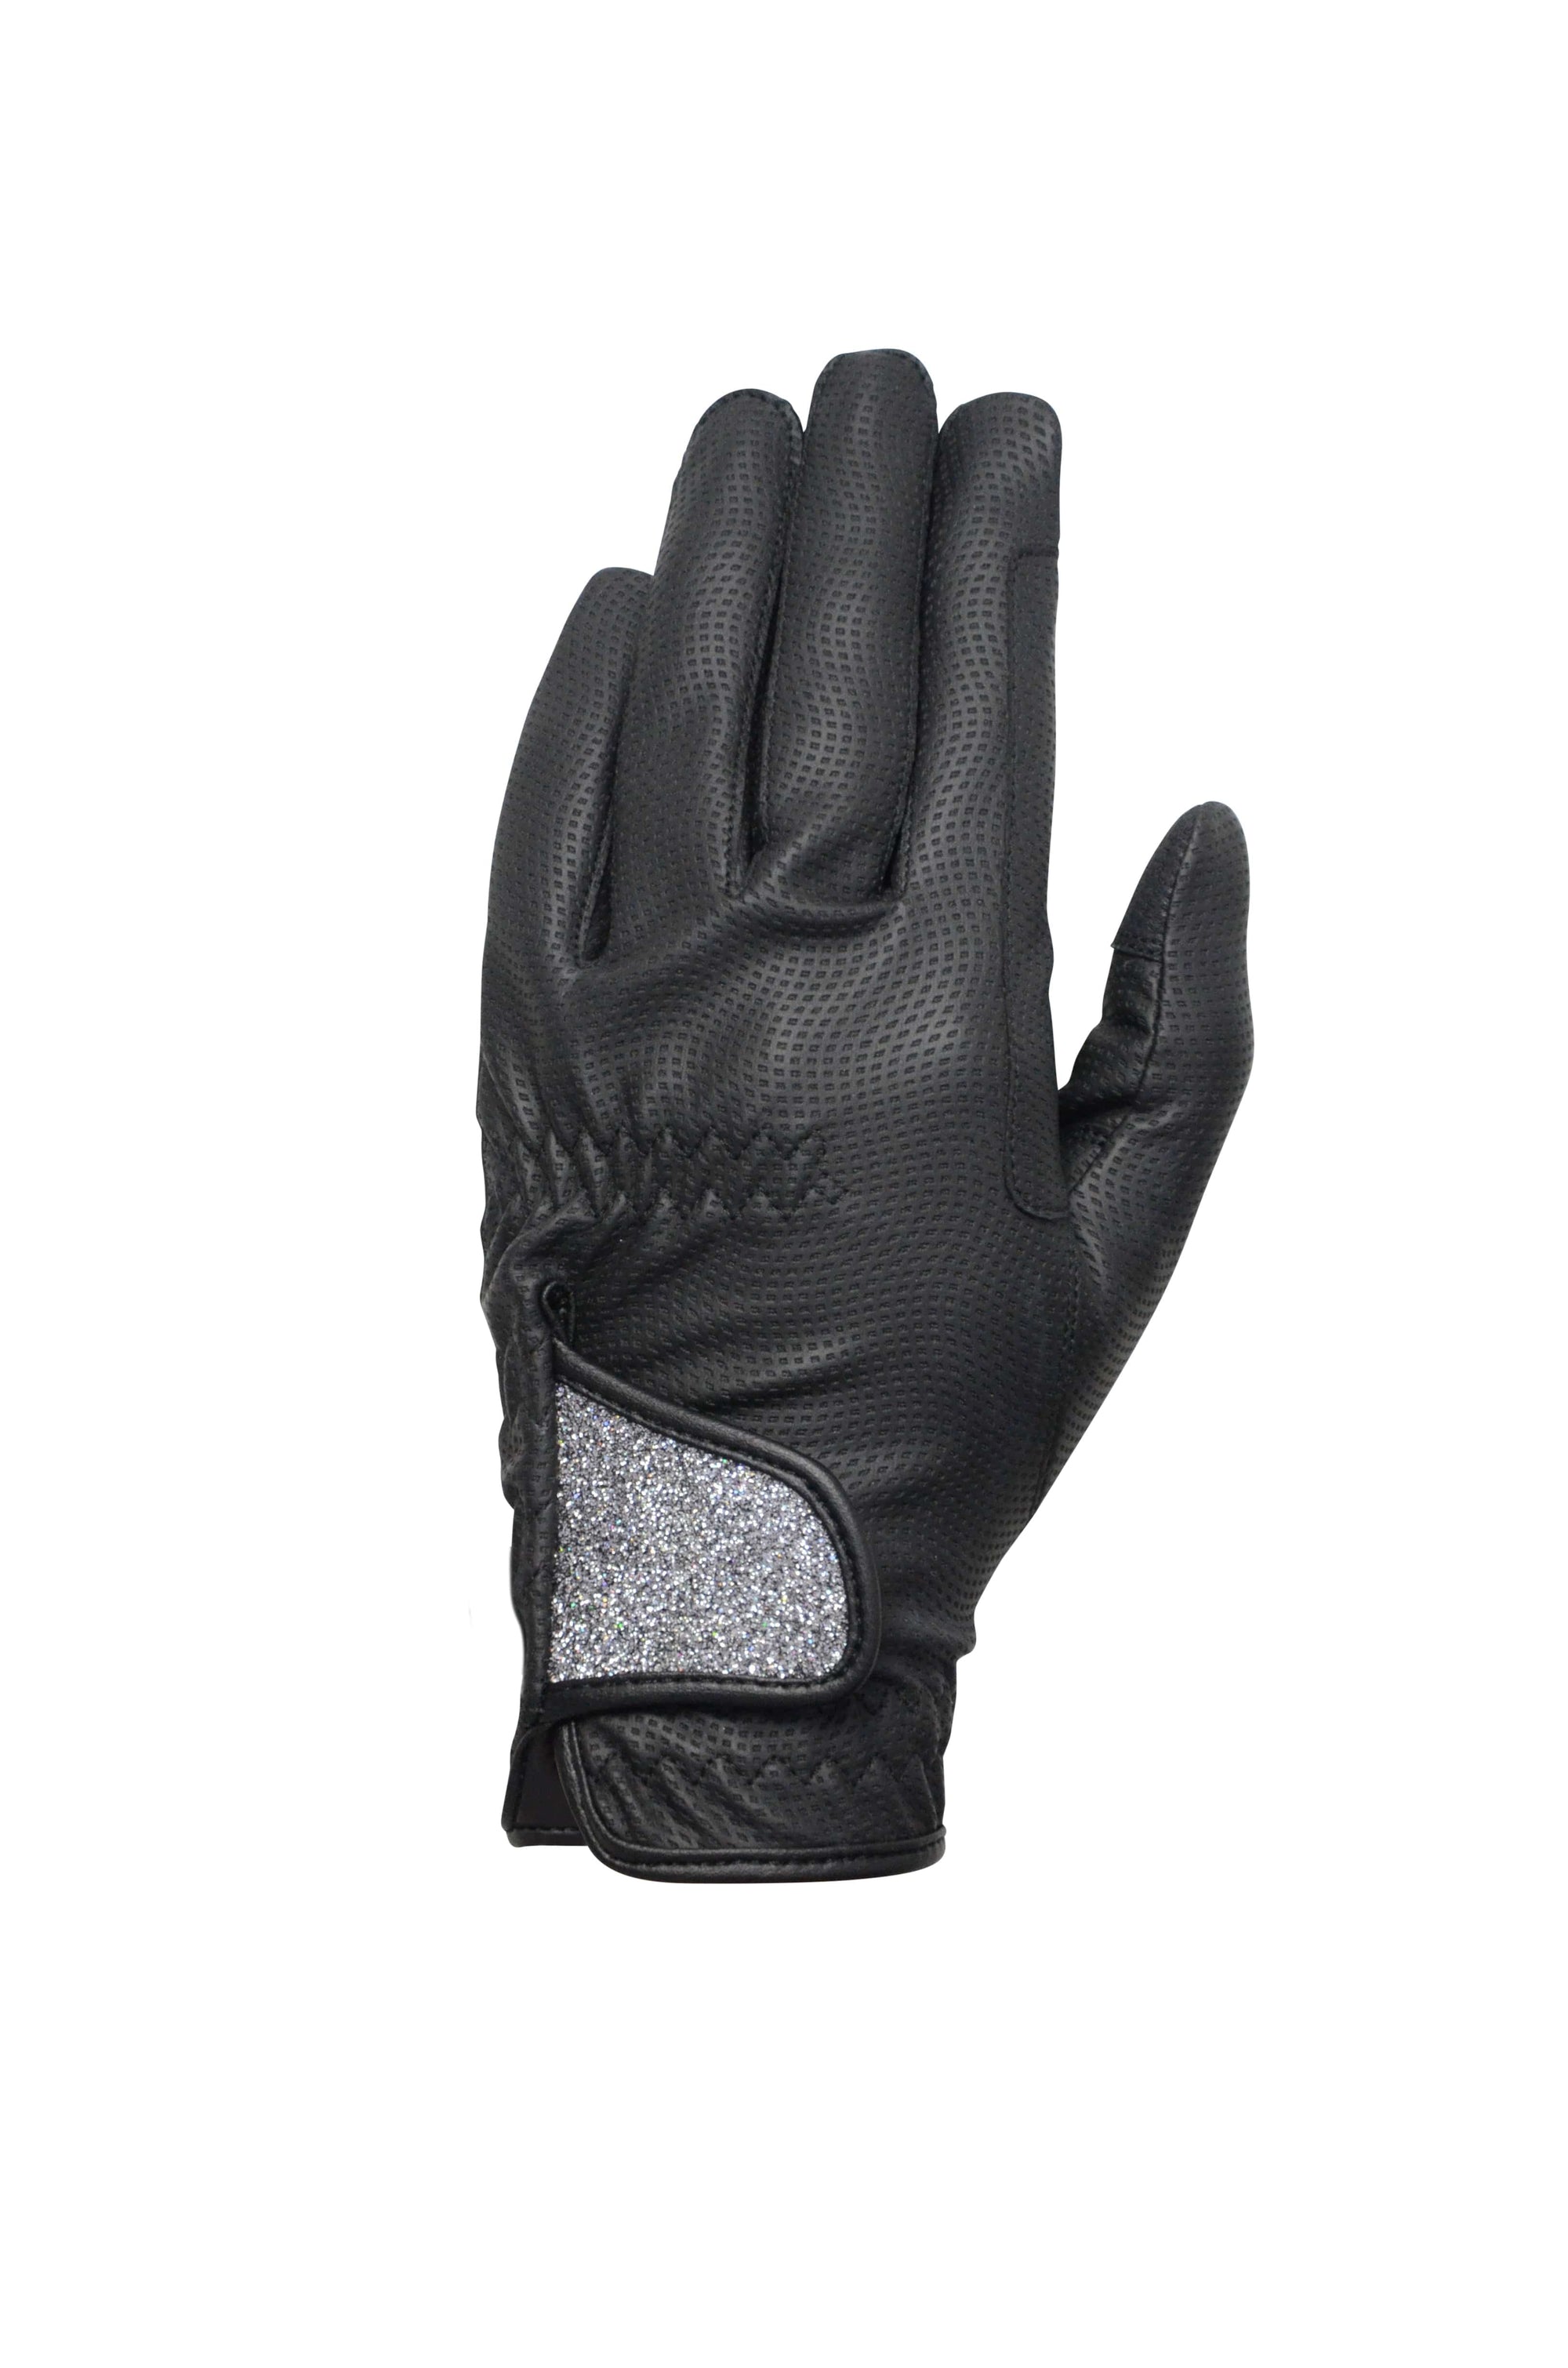 Hy5 roka advanced riding gloves